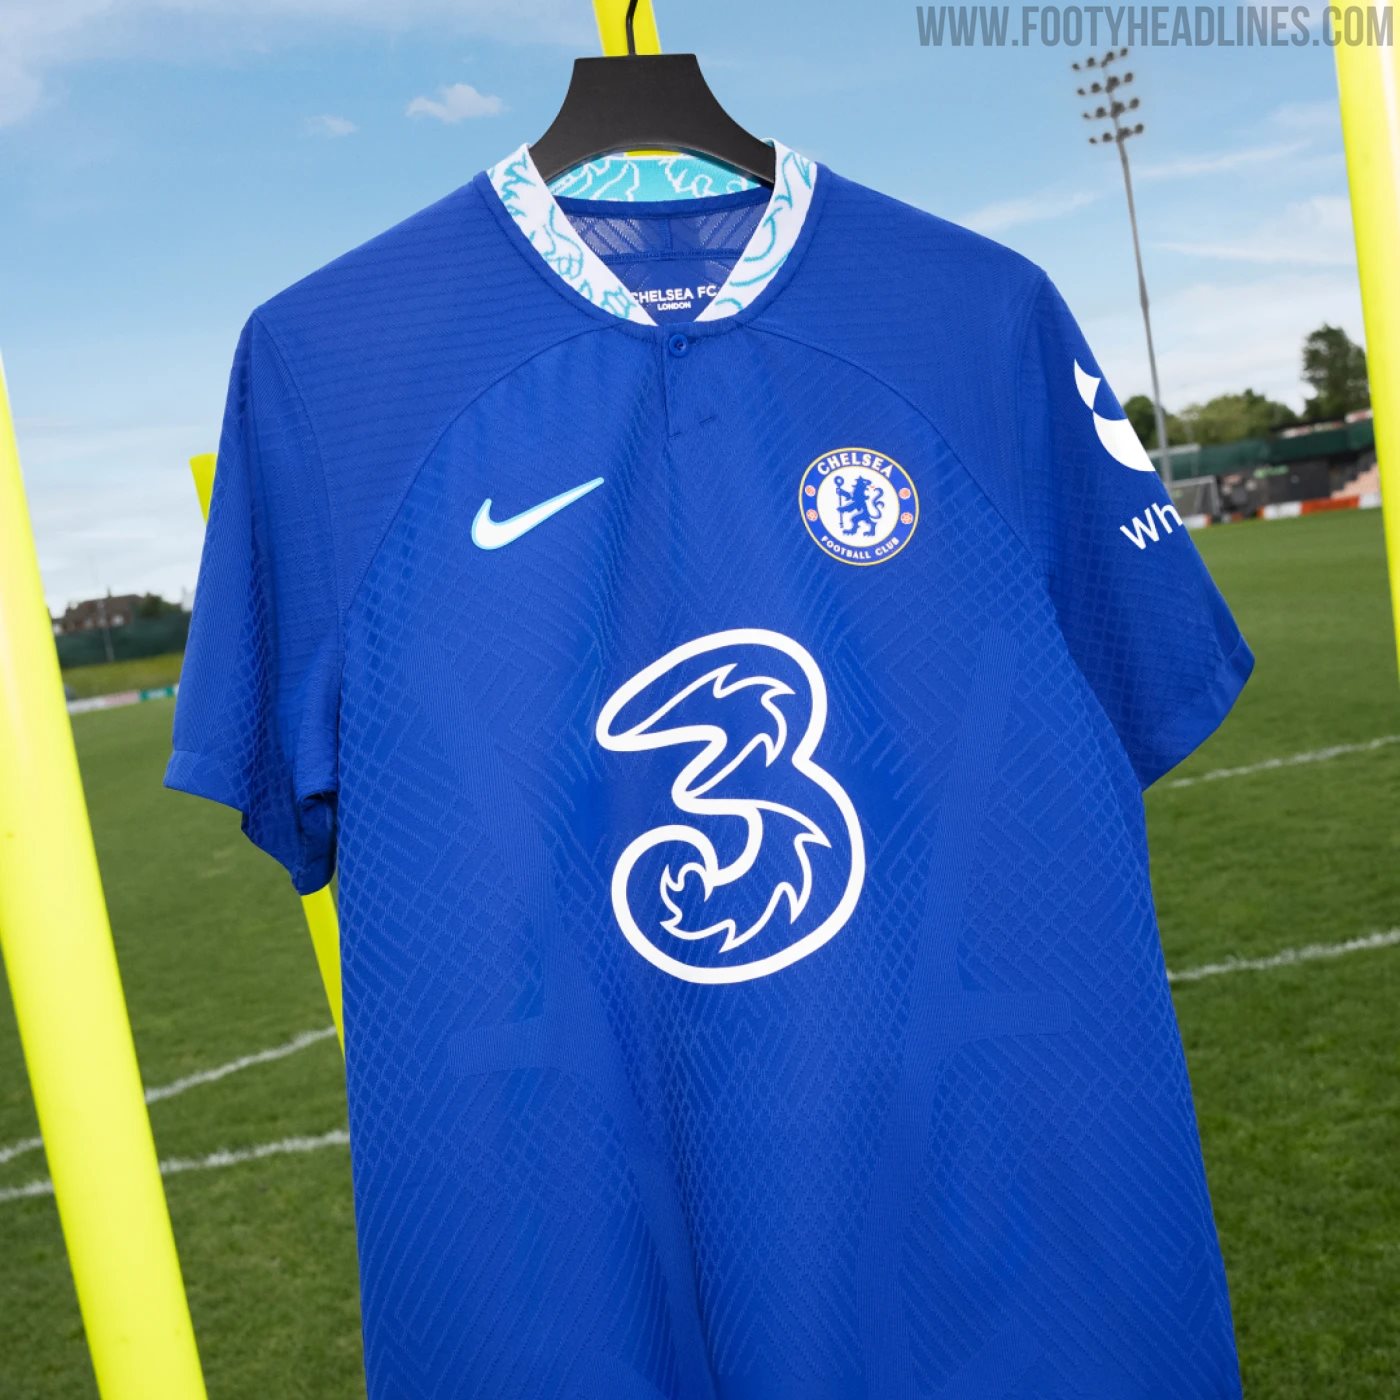 New Chelsea 2022/23 home kit leaked